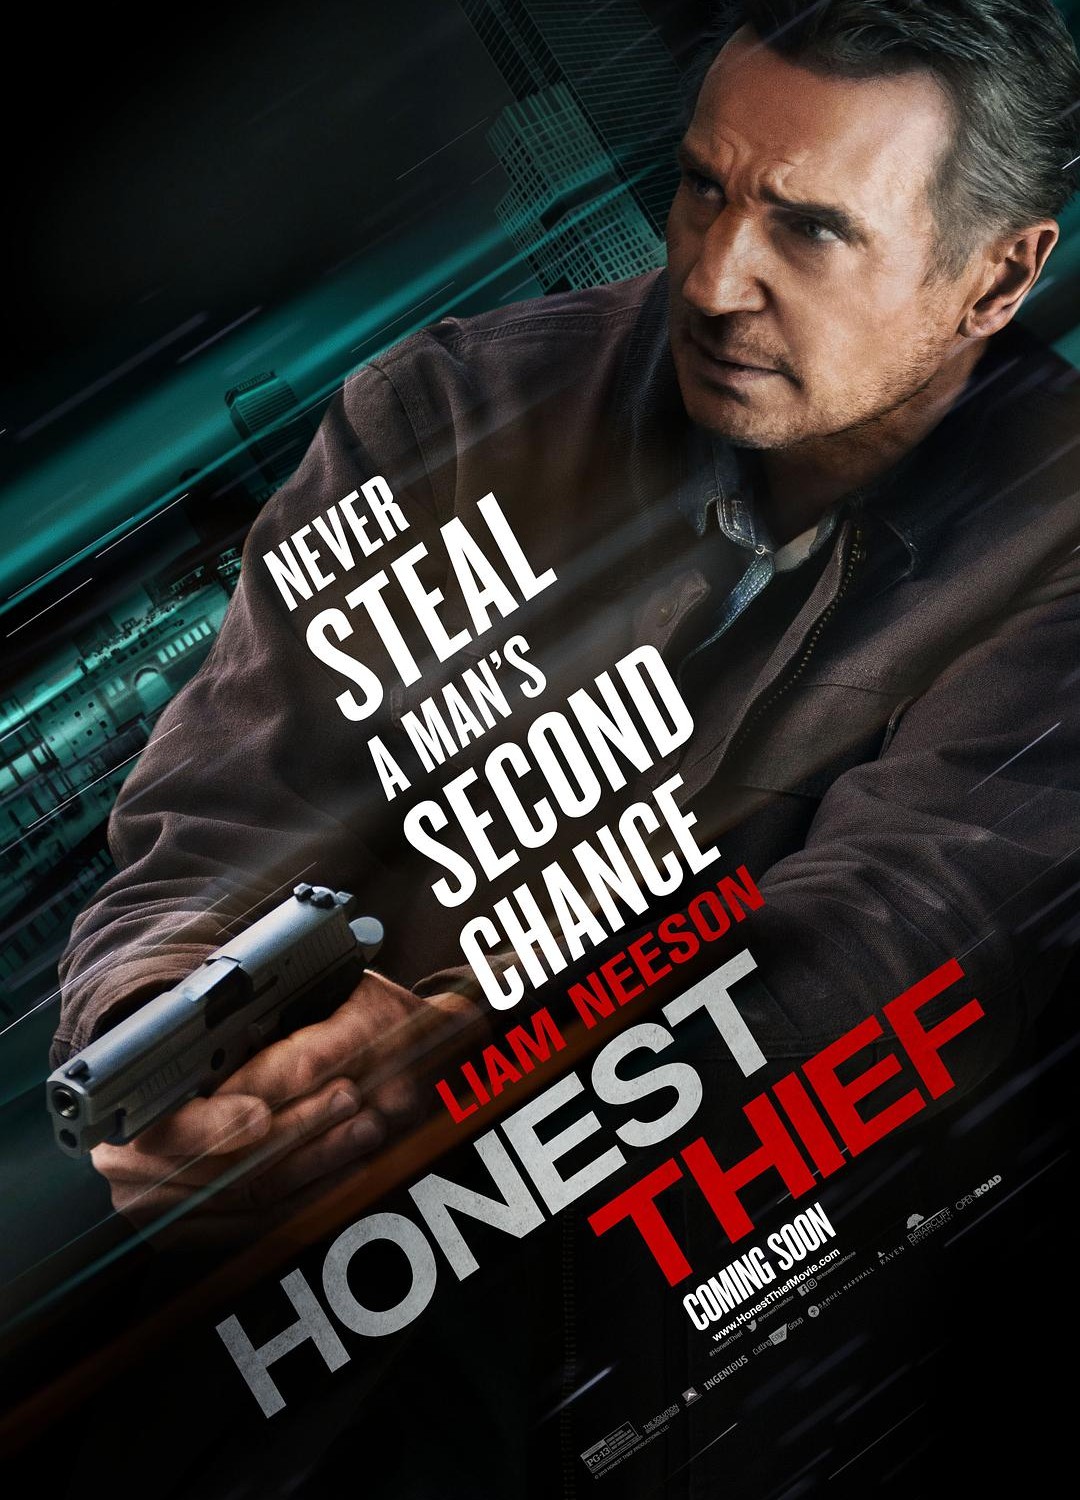 [末路狂盗(港)/倒数反击(台)/诚实的小偷/The Honest Thief/Honest Thief][2020][美国][动作][英语]